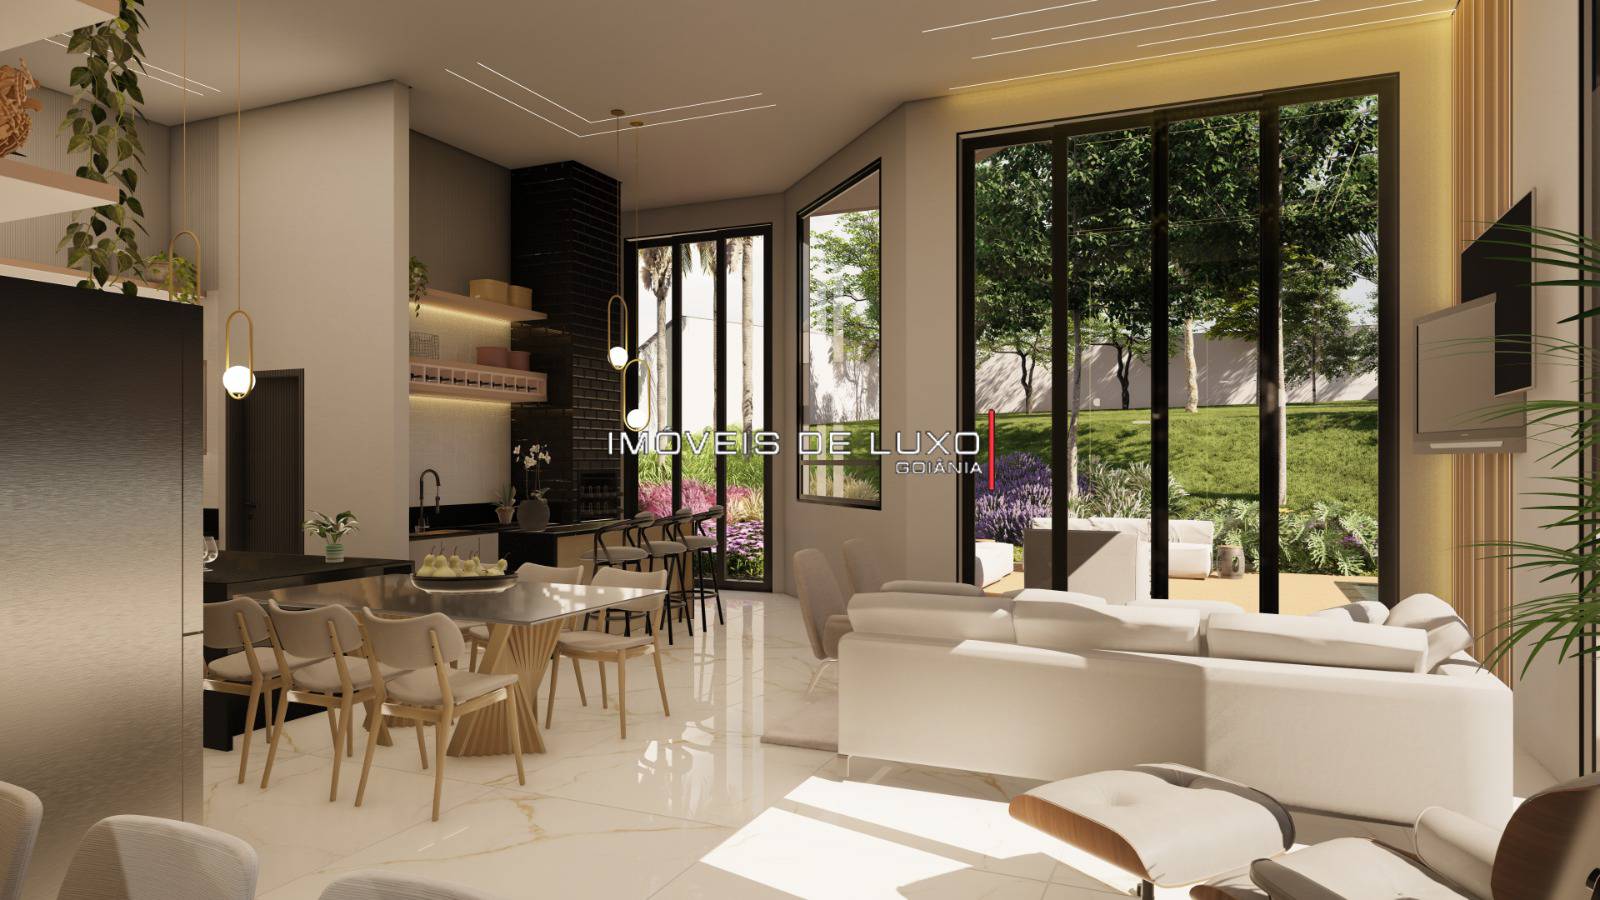 Imóveis de Luxo - Casa Térrea alto padrão, 288m2, projeto contemporâneo!! Villa Verde